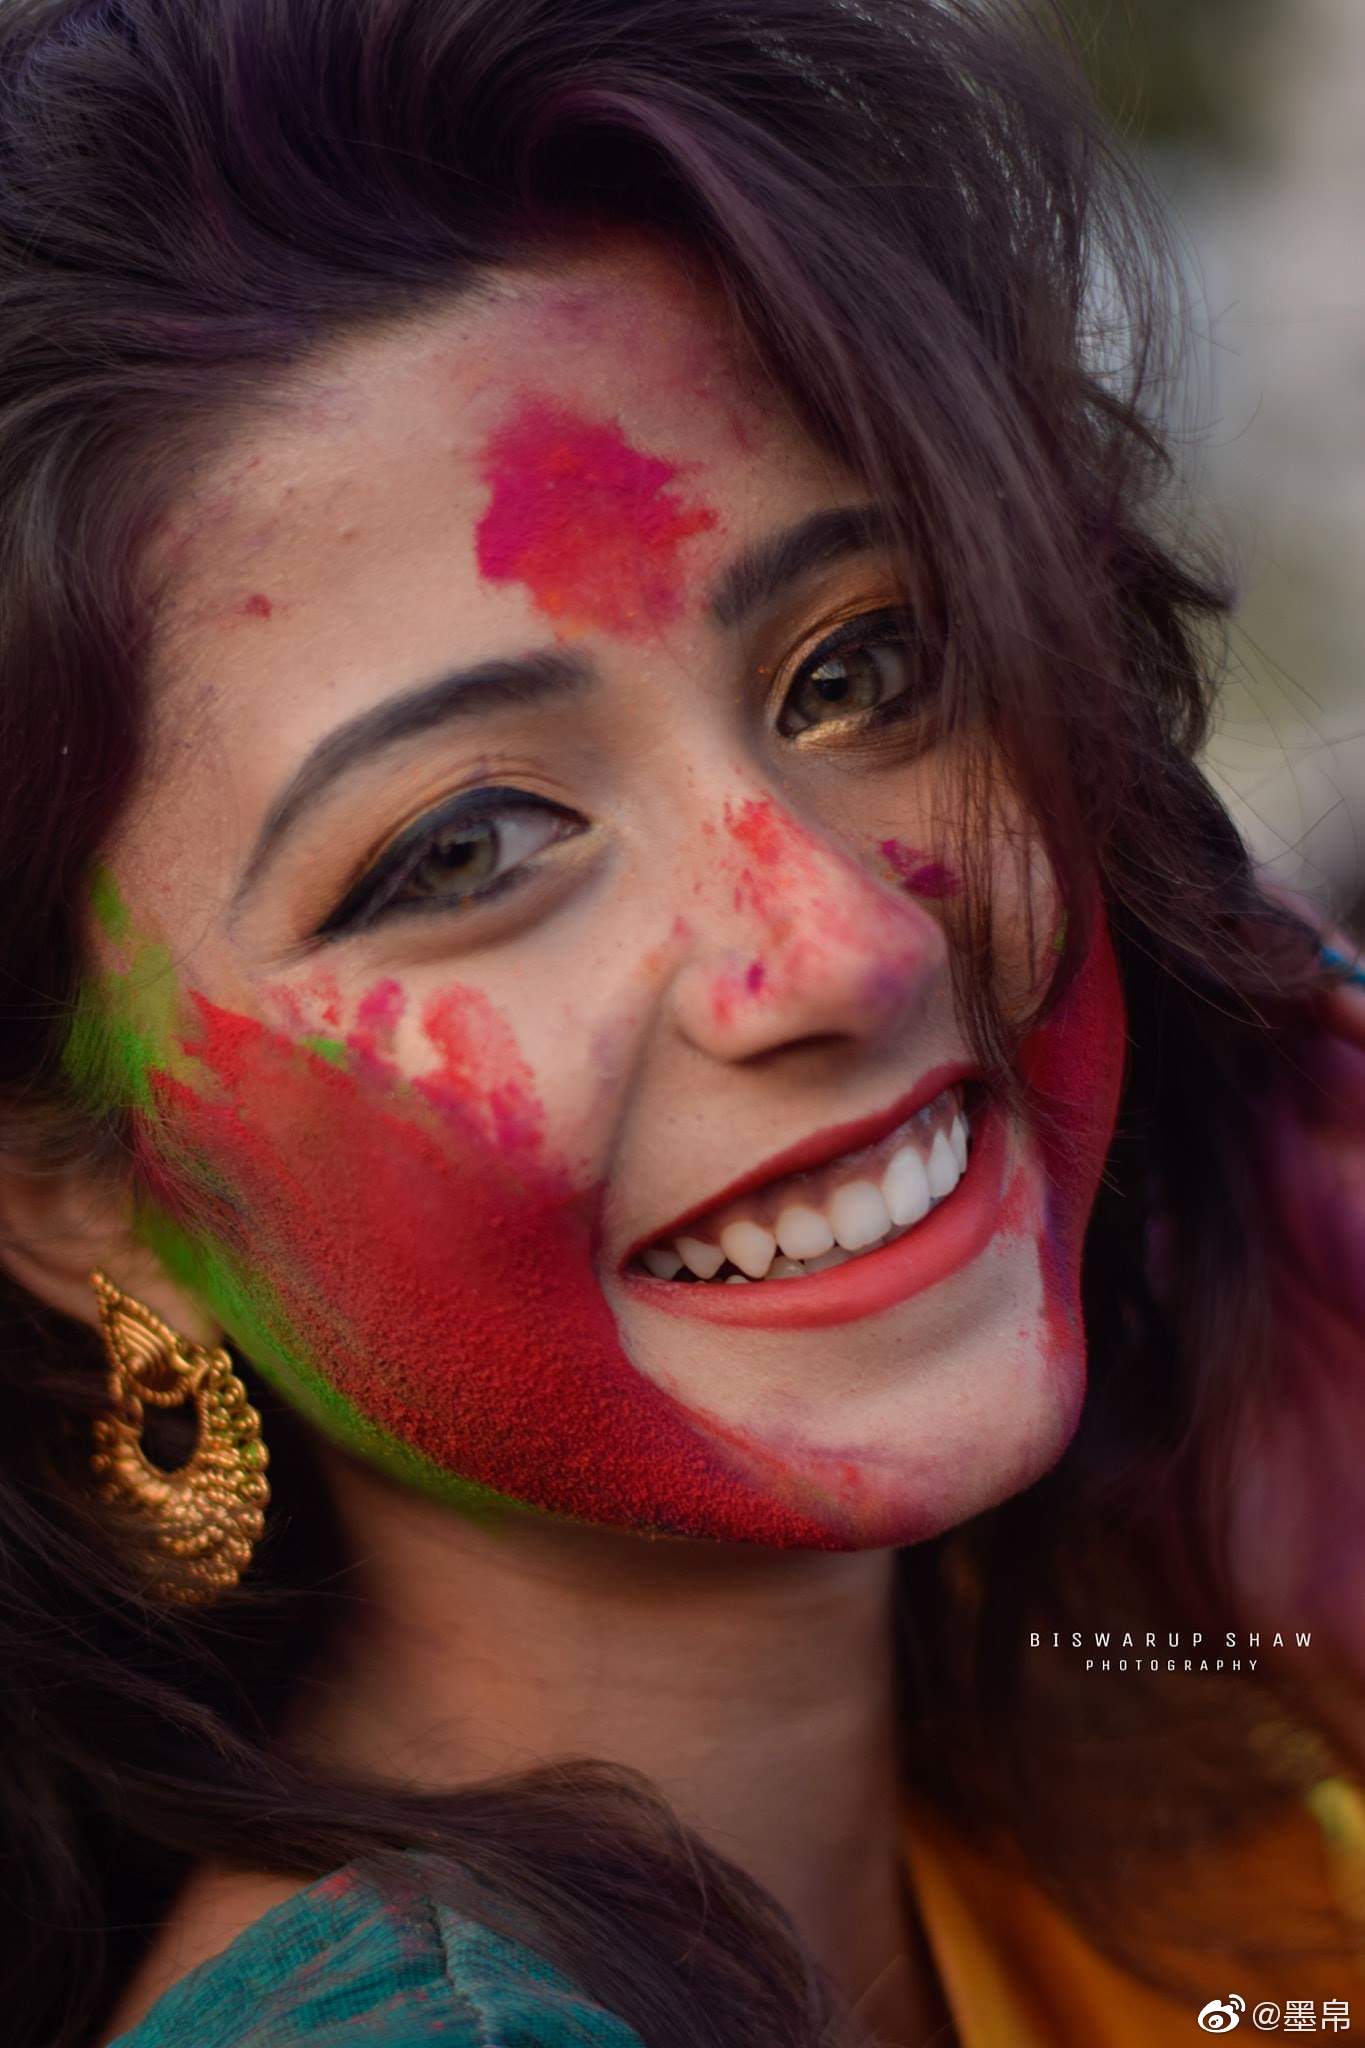 印度多地庆祝胡里节 现场成彩色粉末海洋